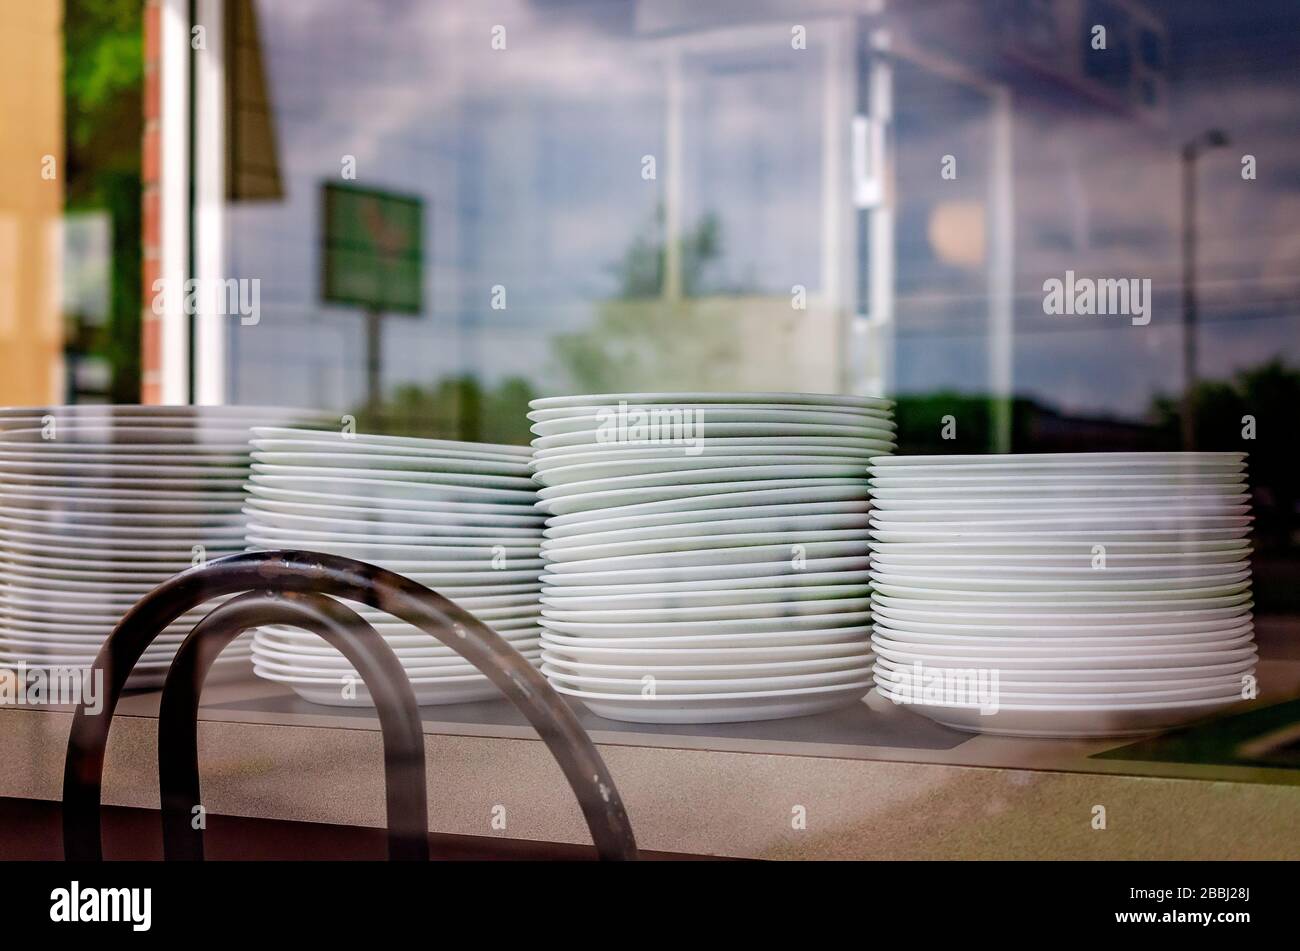 Les plaques vides sont empilées sur un comptoir dans une Waffle House qui a fermé en raison de COVID-19, le 29 mars 2020, à Mobile, Alabama. Banque D'Images